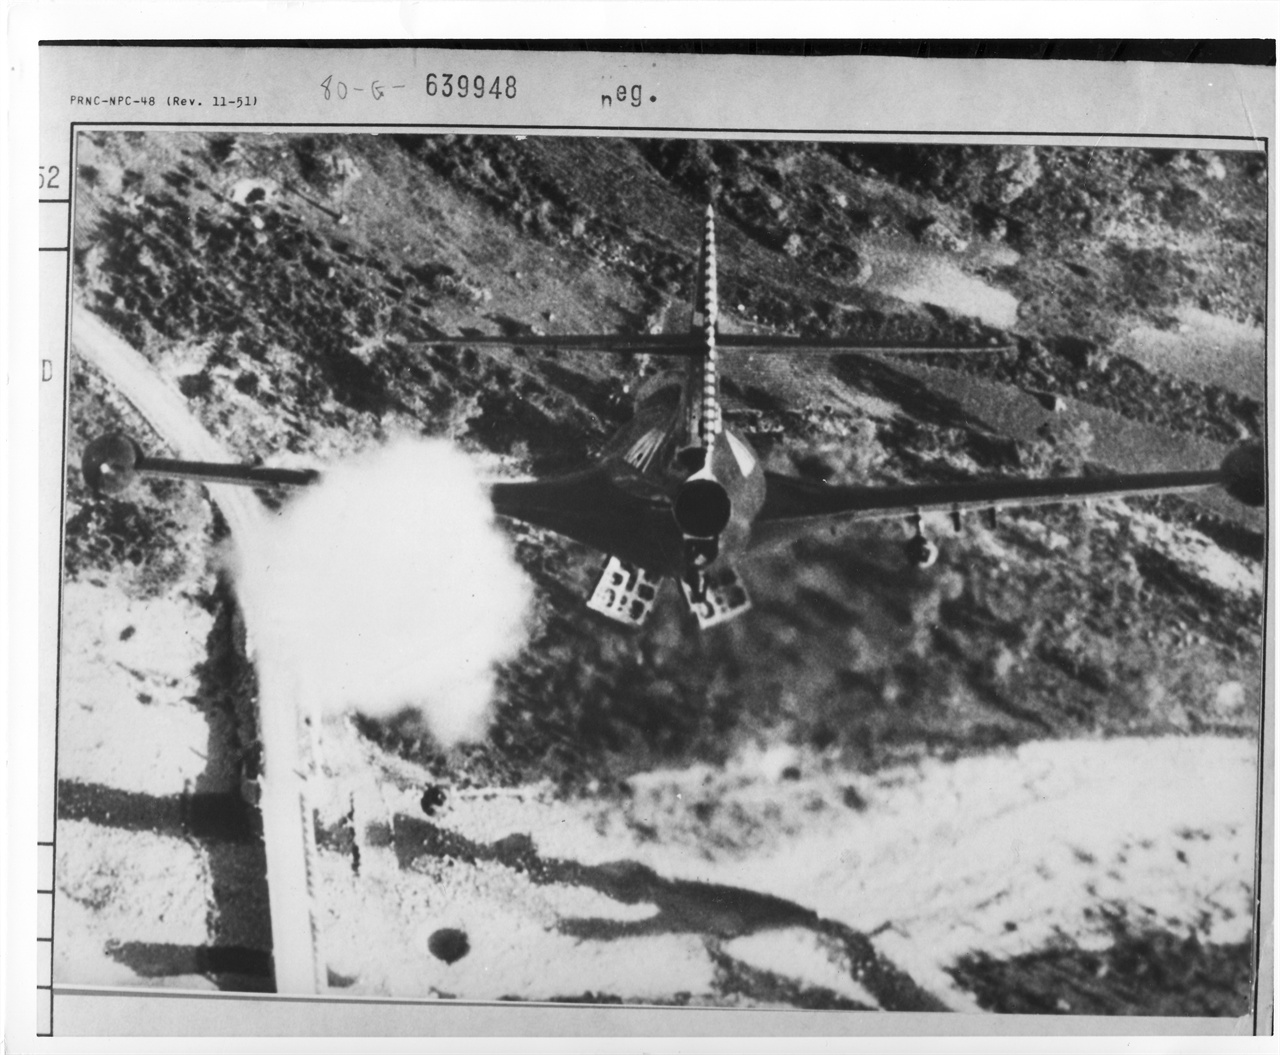  미 전투기가 교량을 폭파하고 있다(1952. 11.).